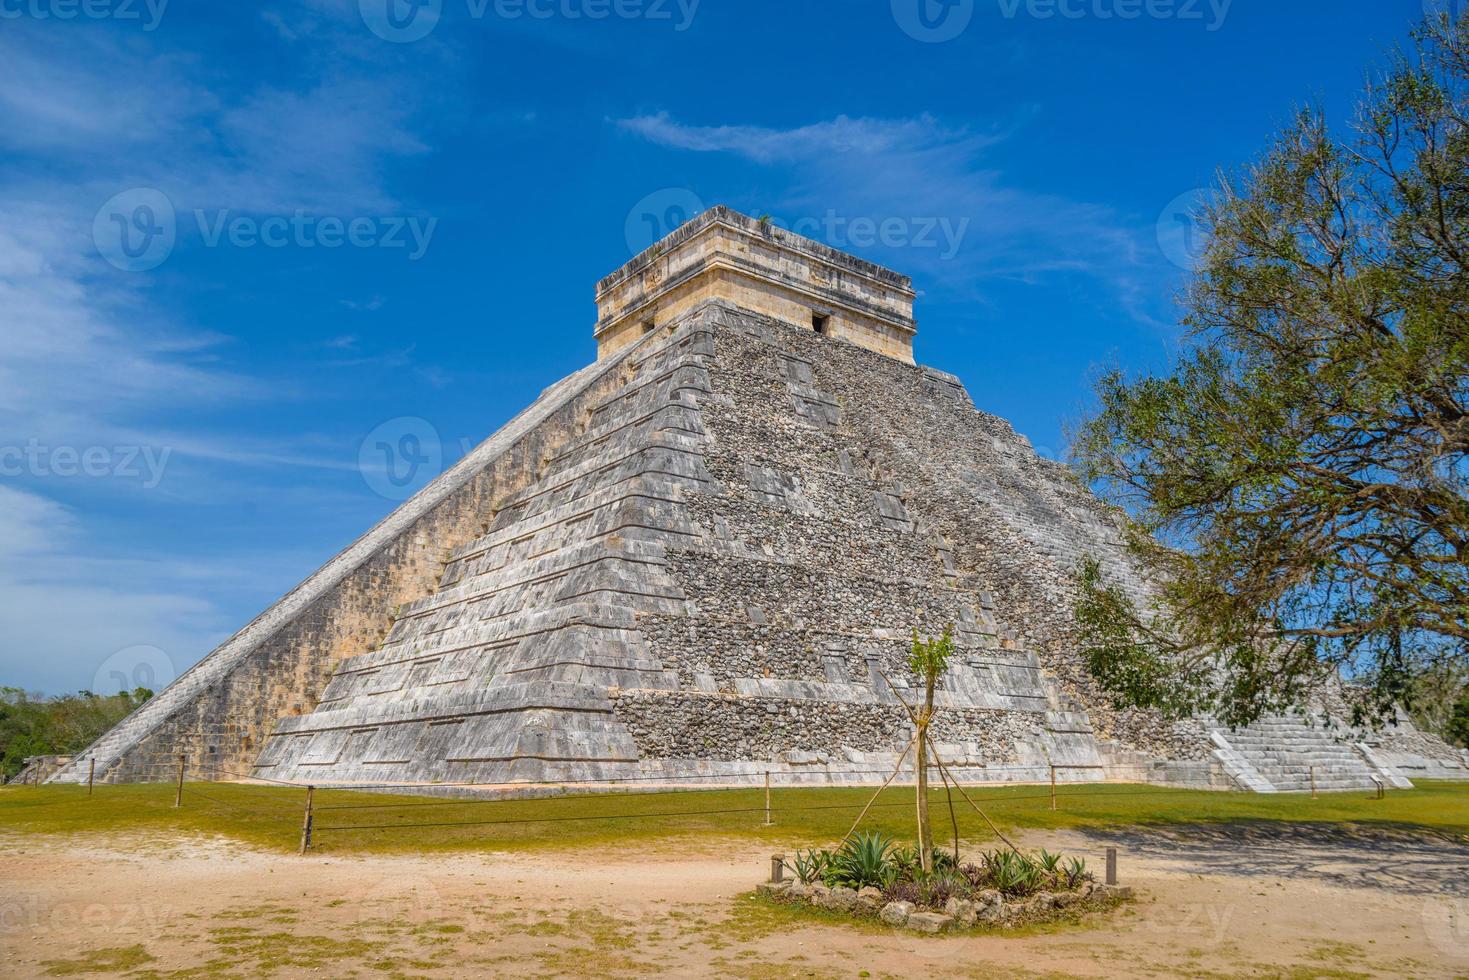 Tempelpyramide von Kukulcan el Castillo, Chichen Itza, Yucatan, Mexiko, Maya-Zivilisation foto